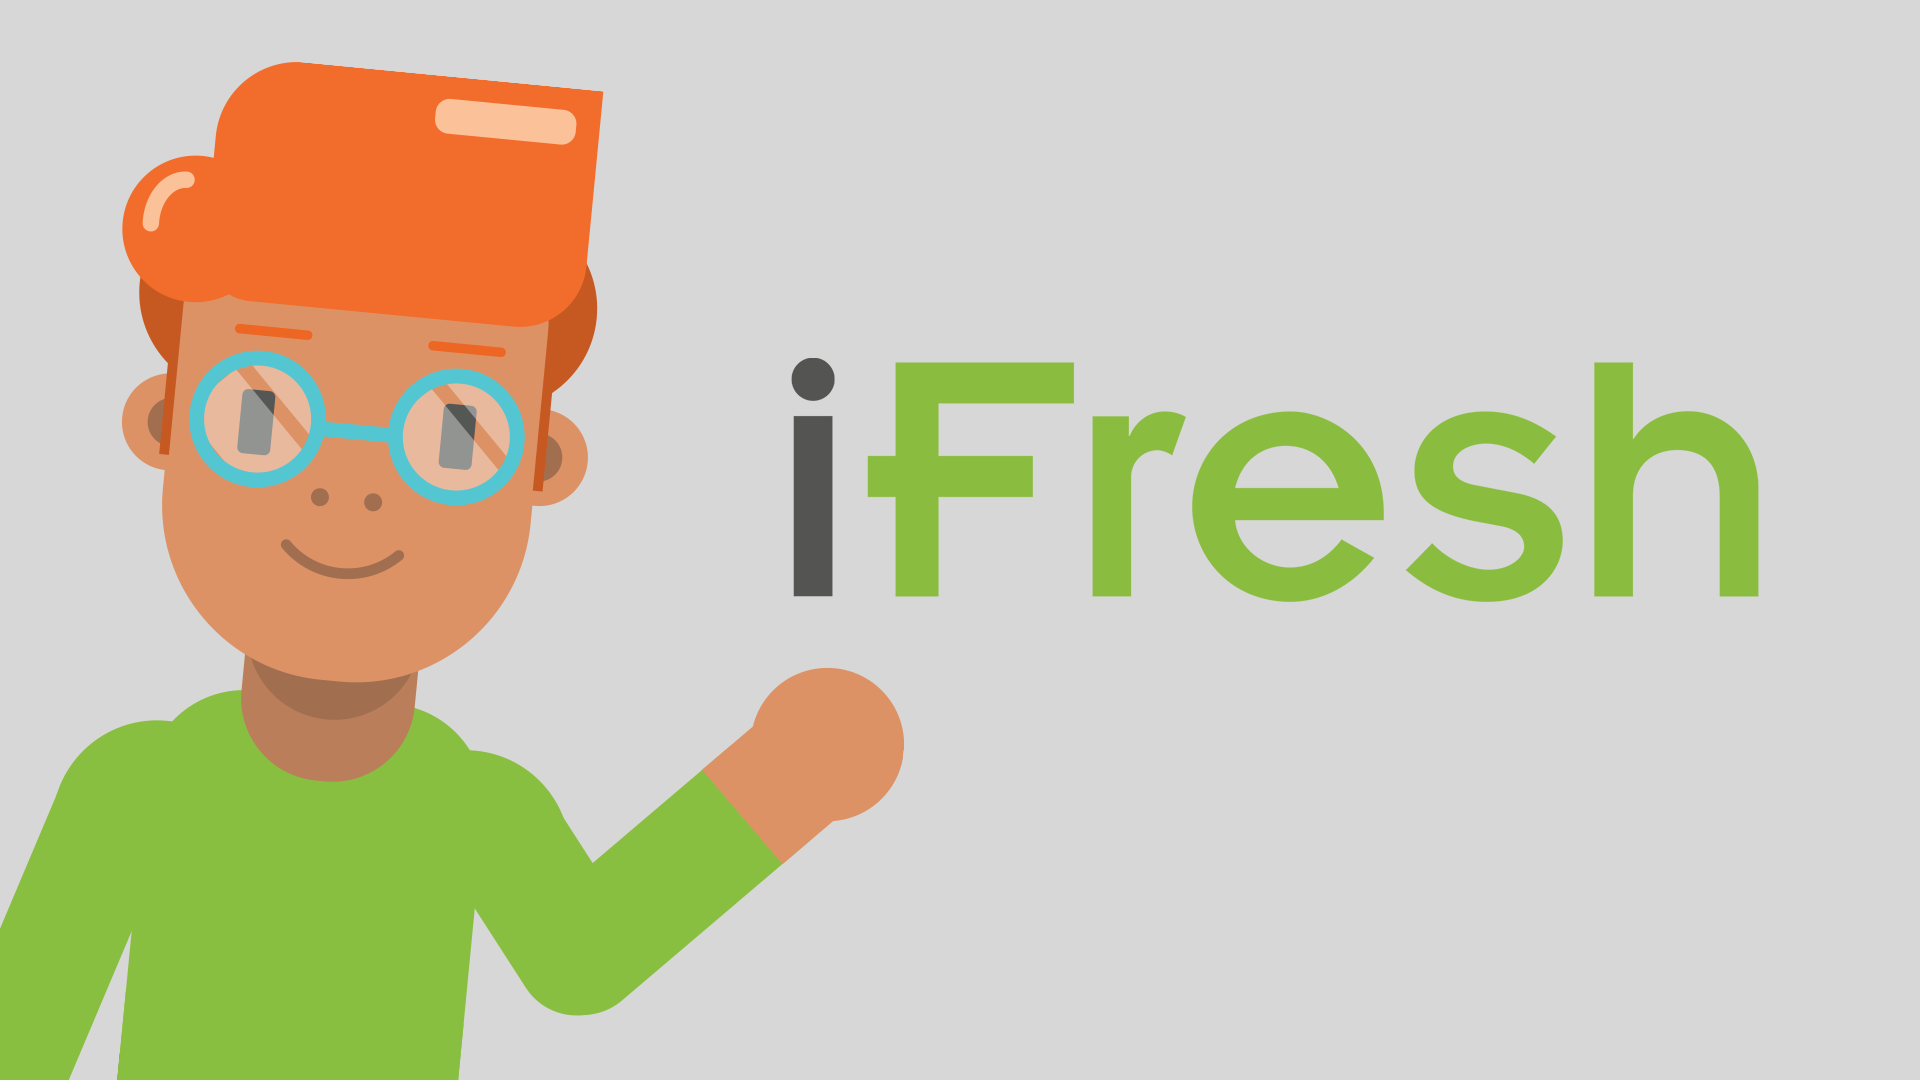 iFresh karakter met het iFresh logo